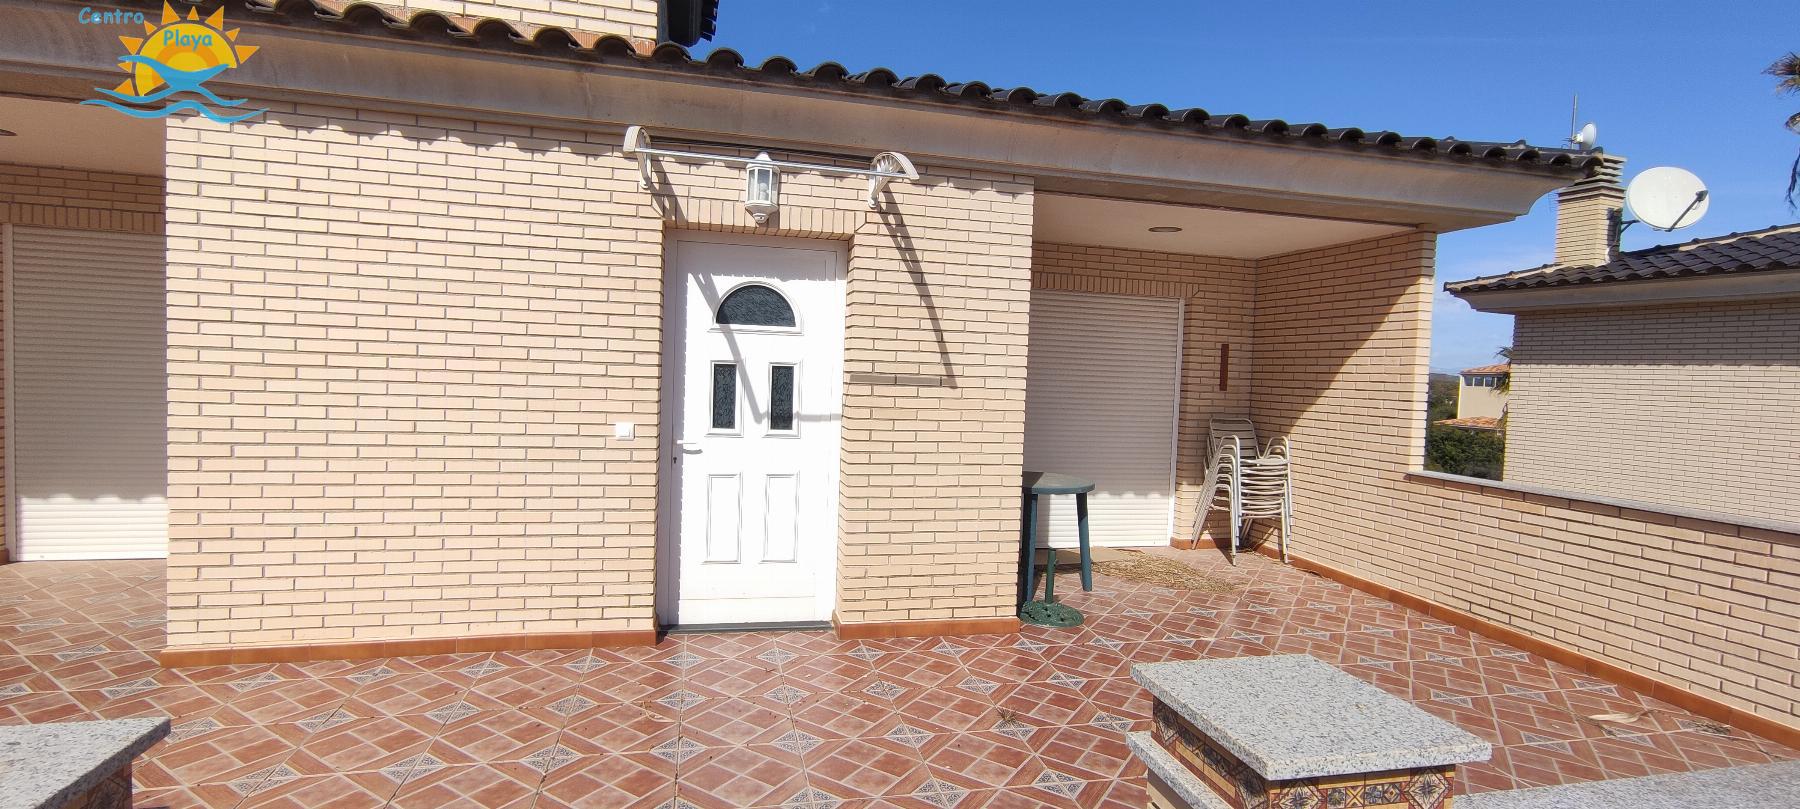 For sale of villa in Peñíscola